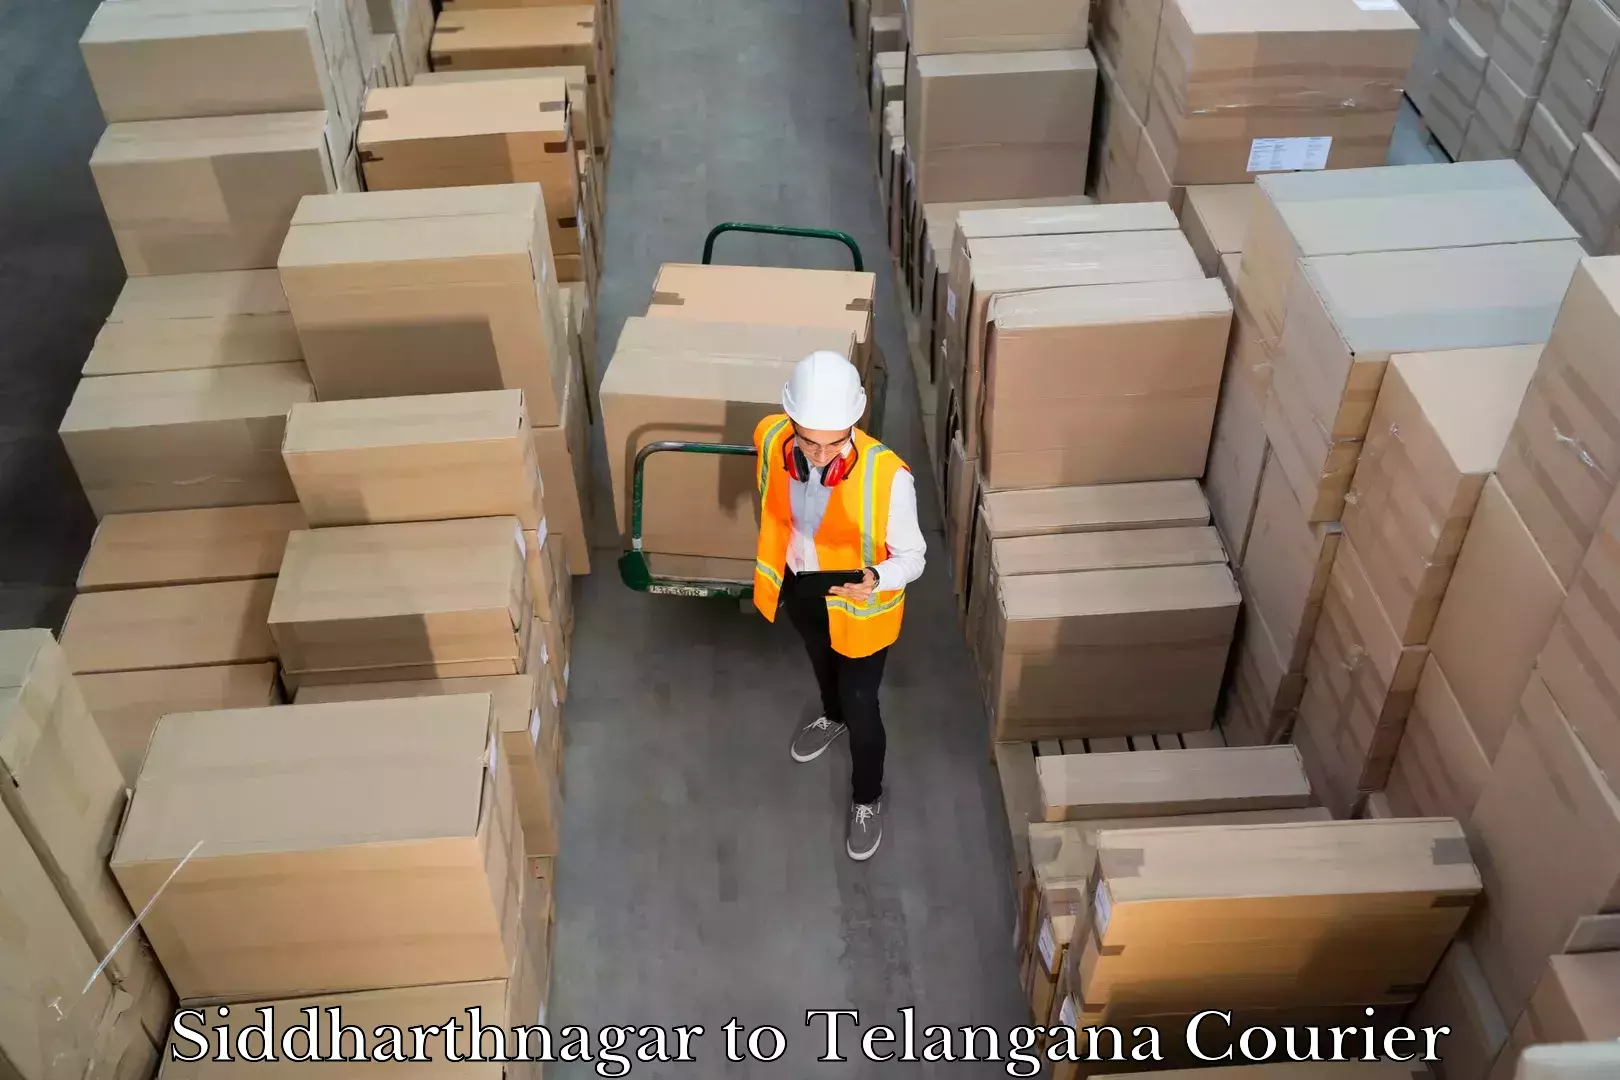 Luggage shipping guide in Siddharthnagar to Yellareddy